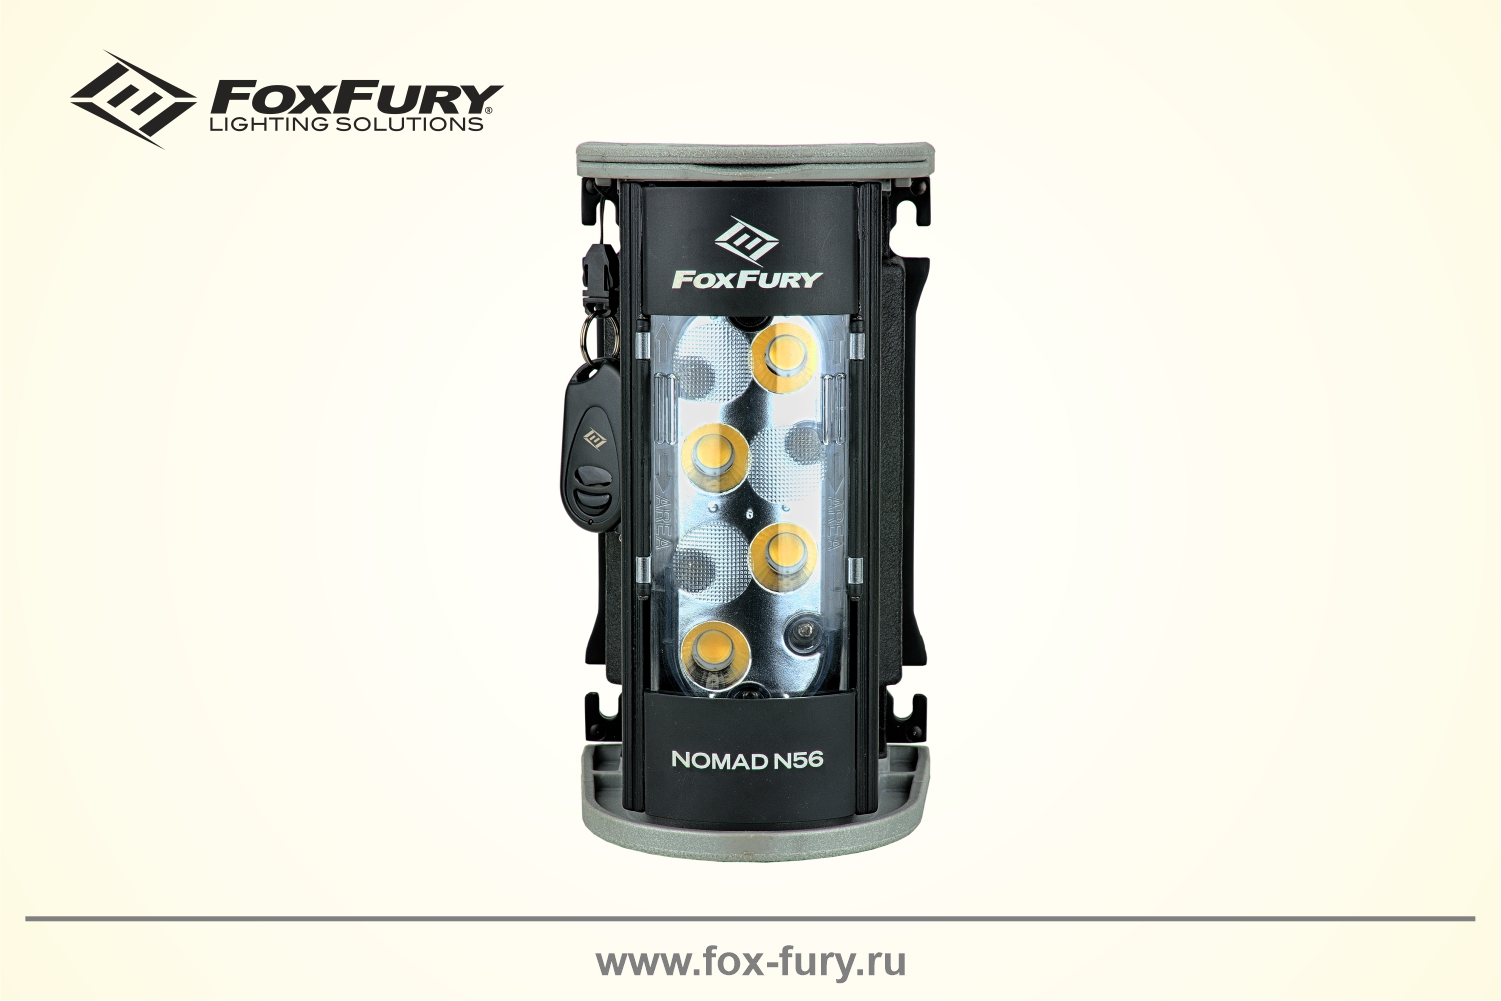 Осветительная система FoxFury Nomad N56 2700лм 200-4N56